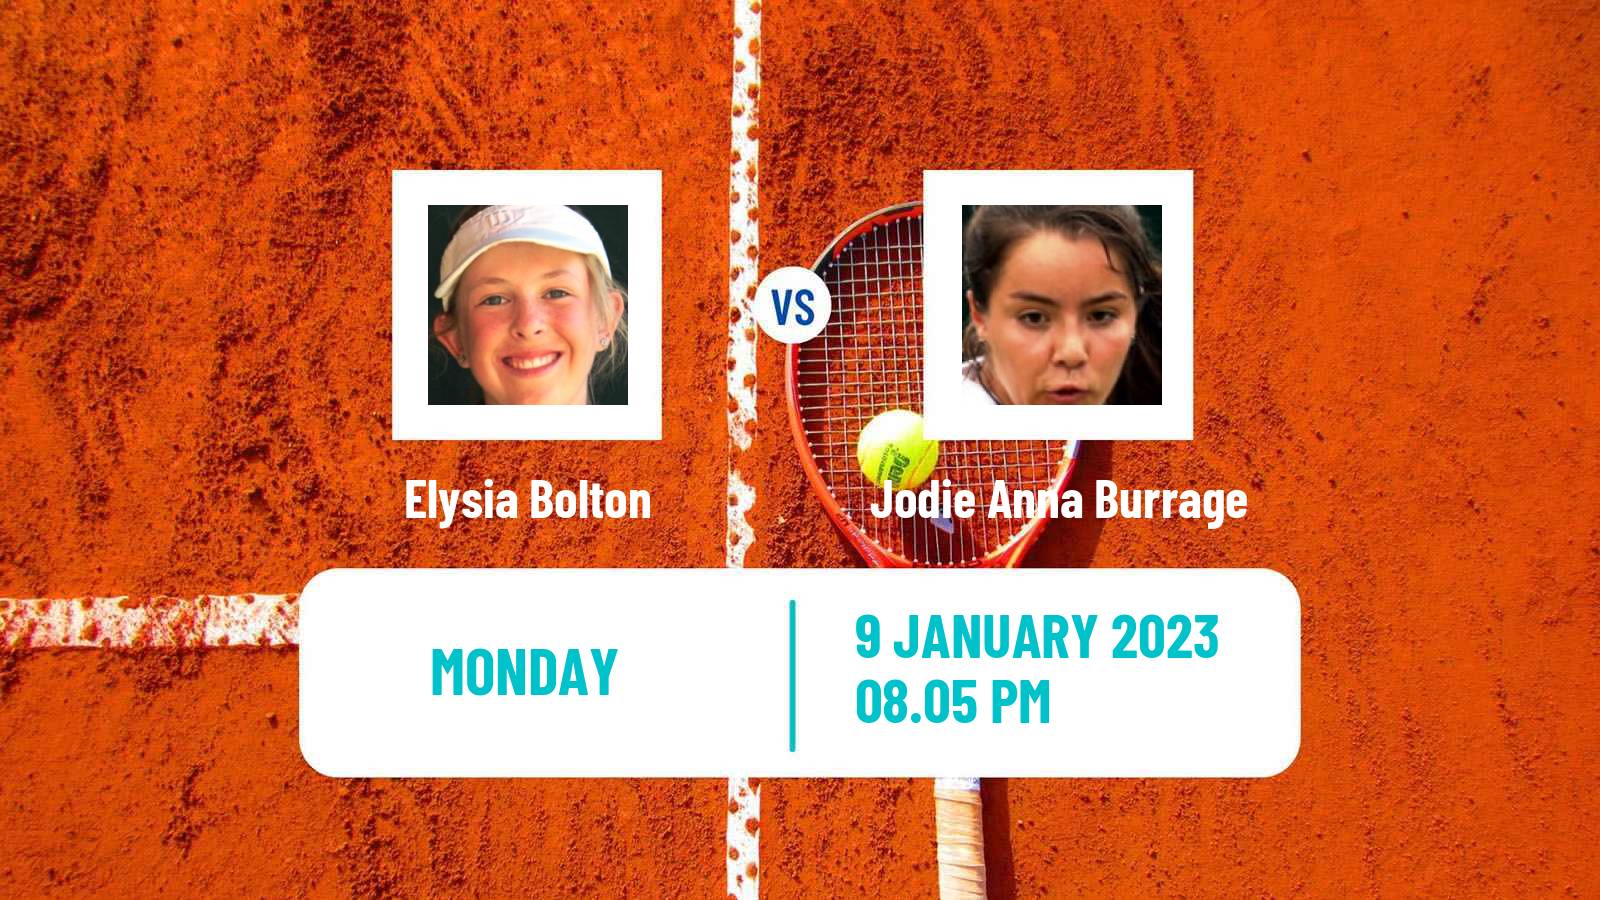 Tennis WTA Australian Open Elysia Bolton - Jodie Anna Burrage